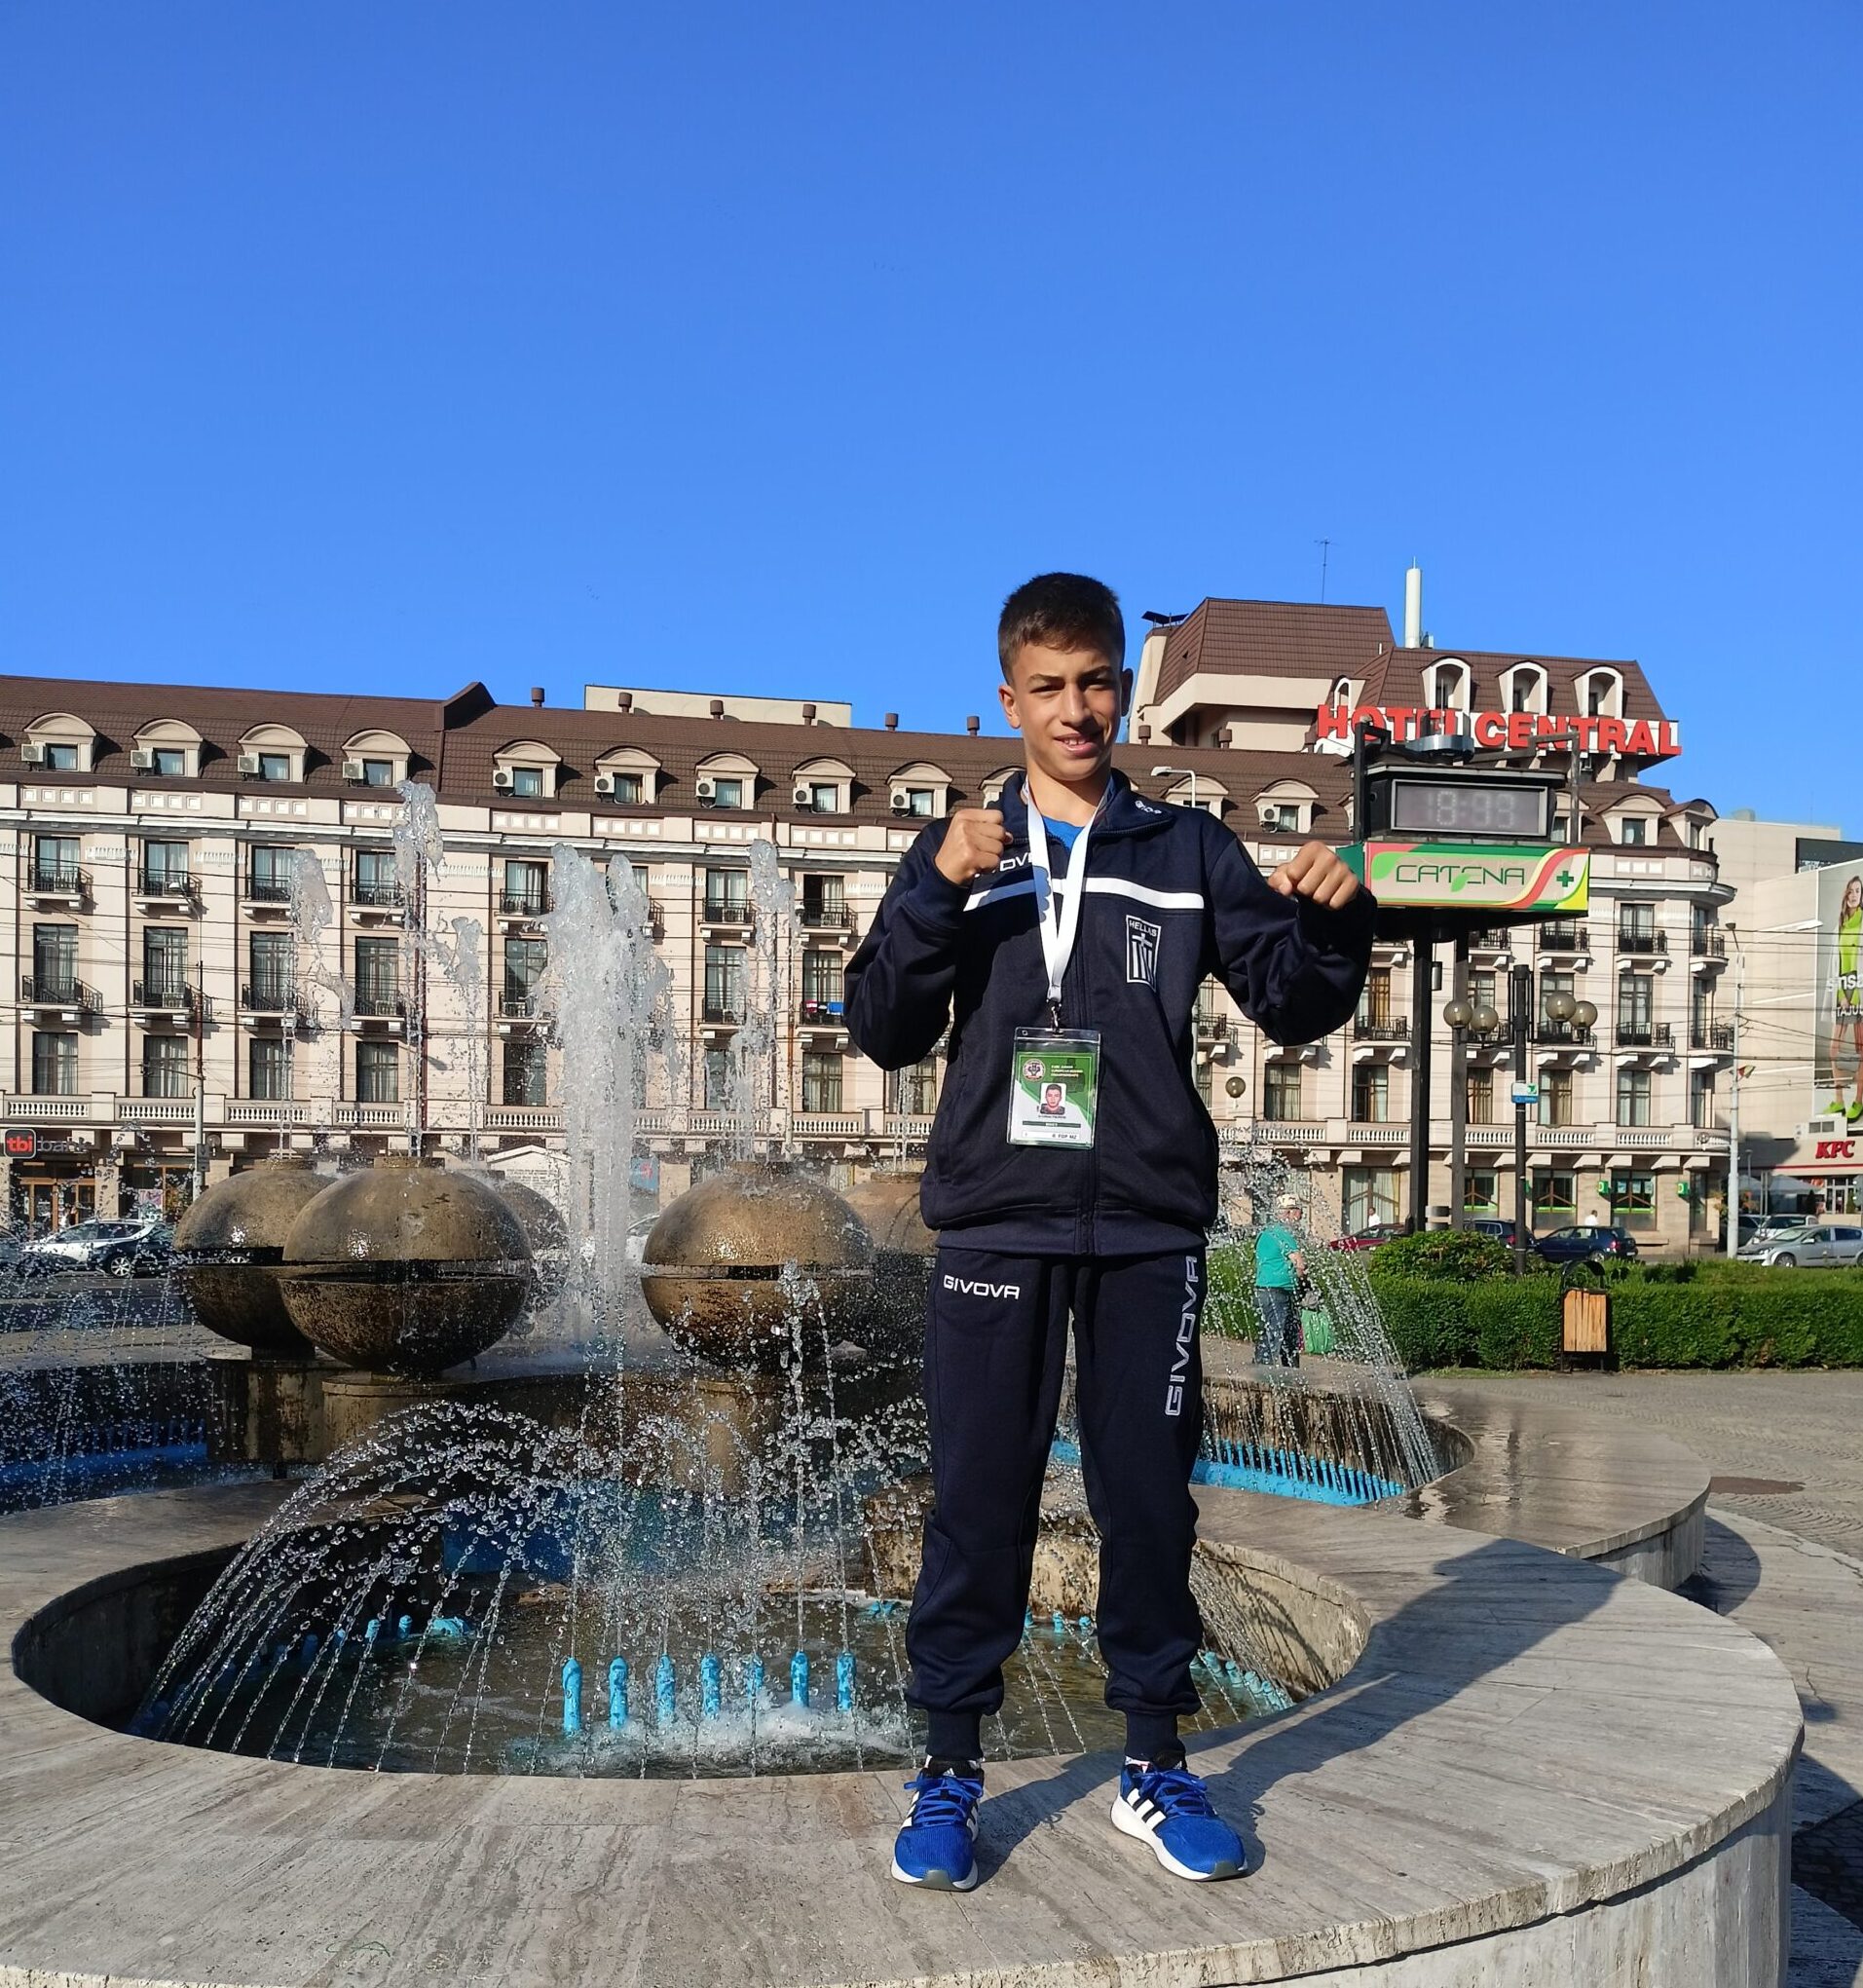 Πρώτος αντίπαλος του Αχιλλέα Τσεπίδη για μια θέση στο βάθρο των νικητών ο Πρωταθλητής Ουκρανίας